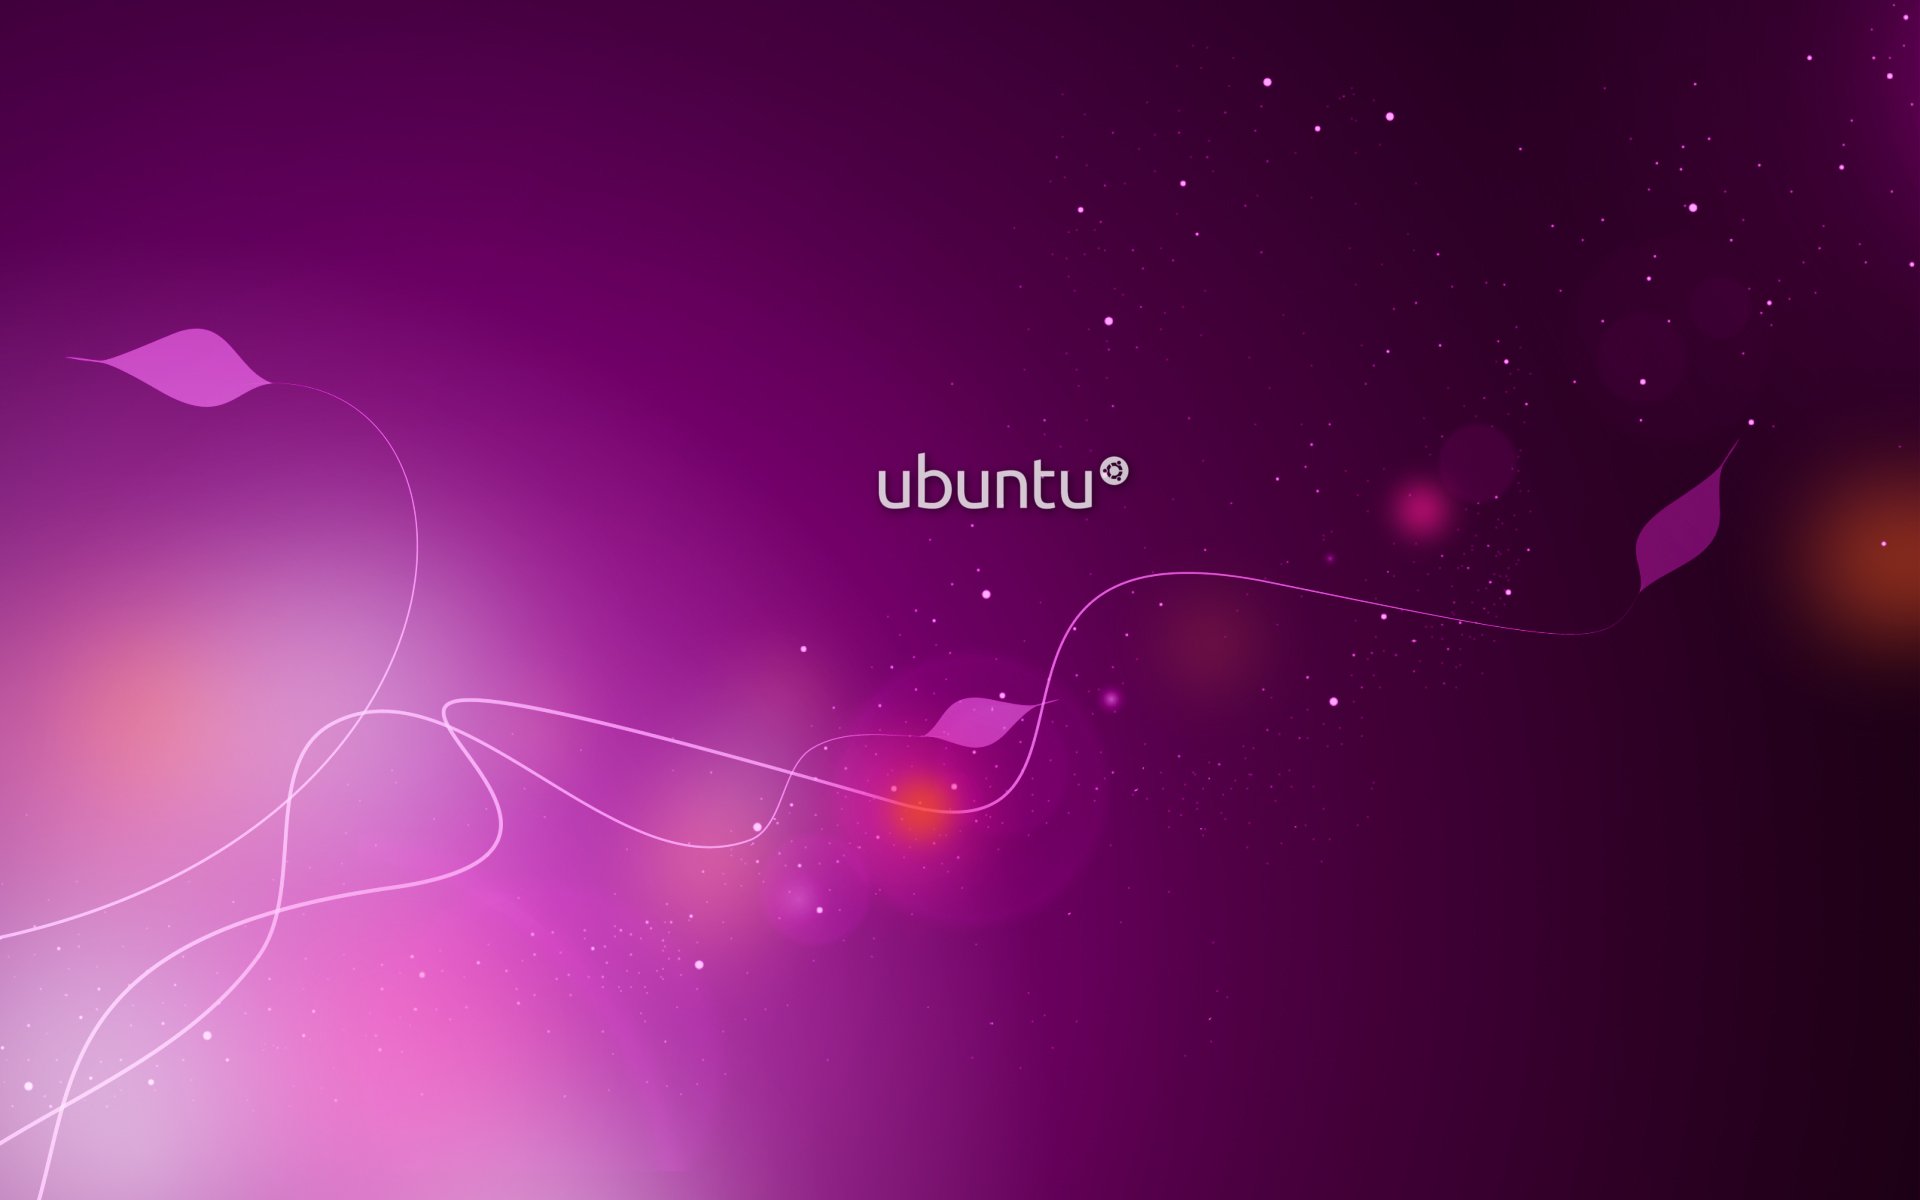 ubuntu fondo de pantalla,violeta,púrpura,rosado,cielo,ligero